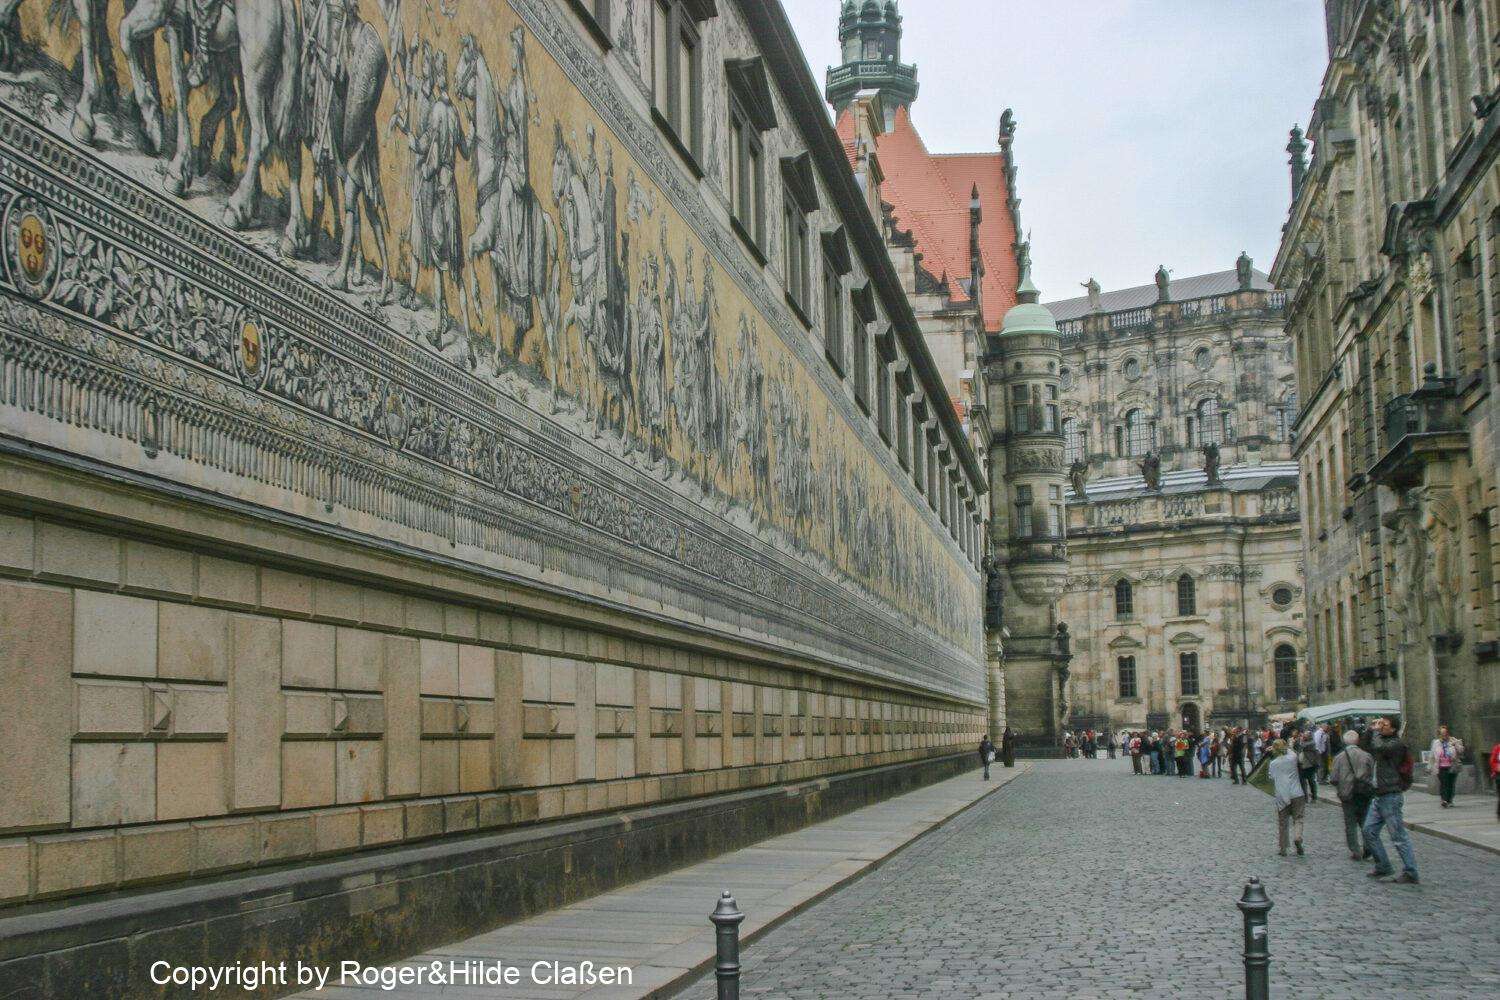 Der Fürstenzug in Dresden. Diese 102 Meter lange Darstellung besteht aus 23.000 Meißner Porzellanfliesen. Sie ist damit die längste und größte Wand dieser Art weltweit. Ahnengalerie 1127 und 1873. Dargestellt sind hier die Markgrafen, Herzöge, Kurfürsten und Könige aus dem Fürstenhaus der Wettin‘s.